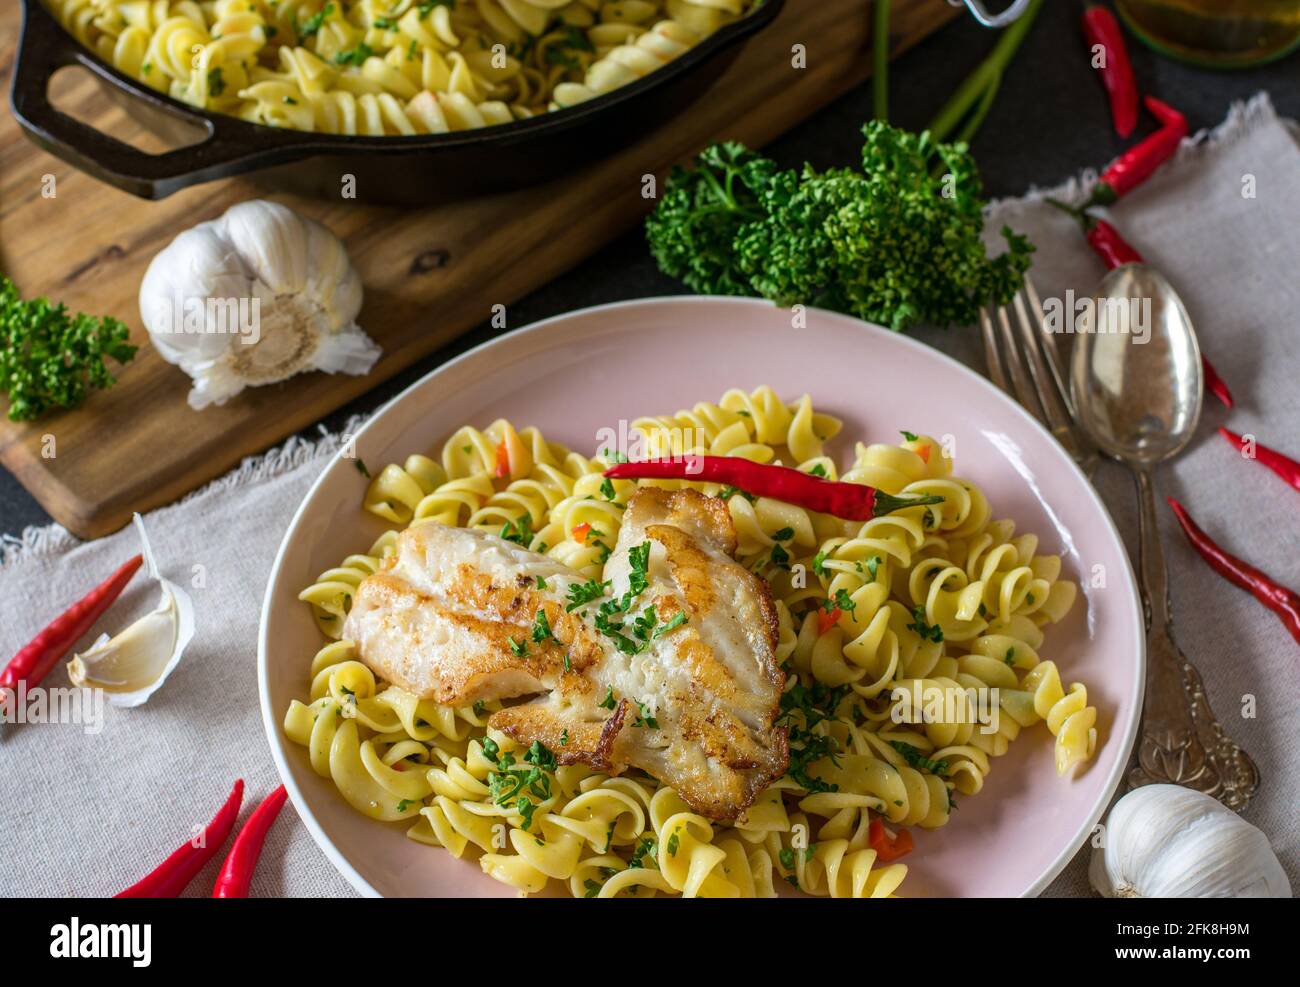 Gesundes italienisches Gericht mit Pasta aglio e olio und gebraten Fisch serviert auf dem Teller auf rustikalem Küchentisch Hintergrund aus Oben Stockfoto